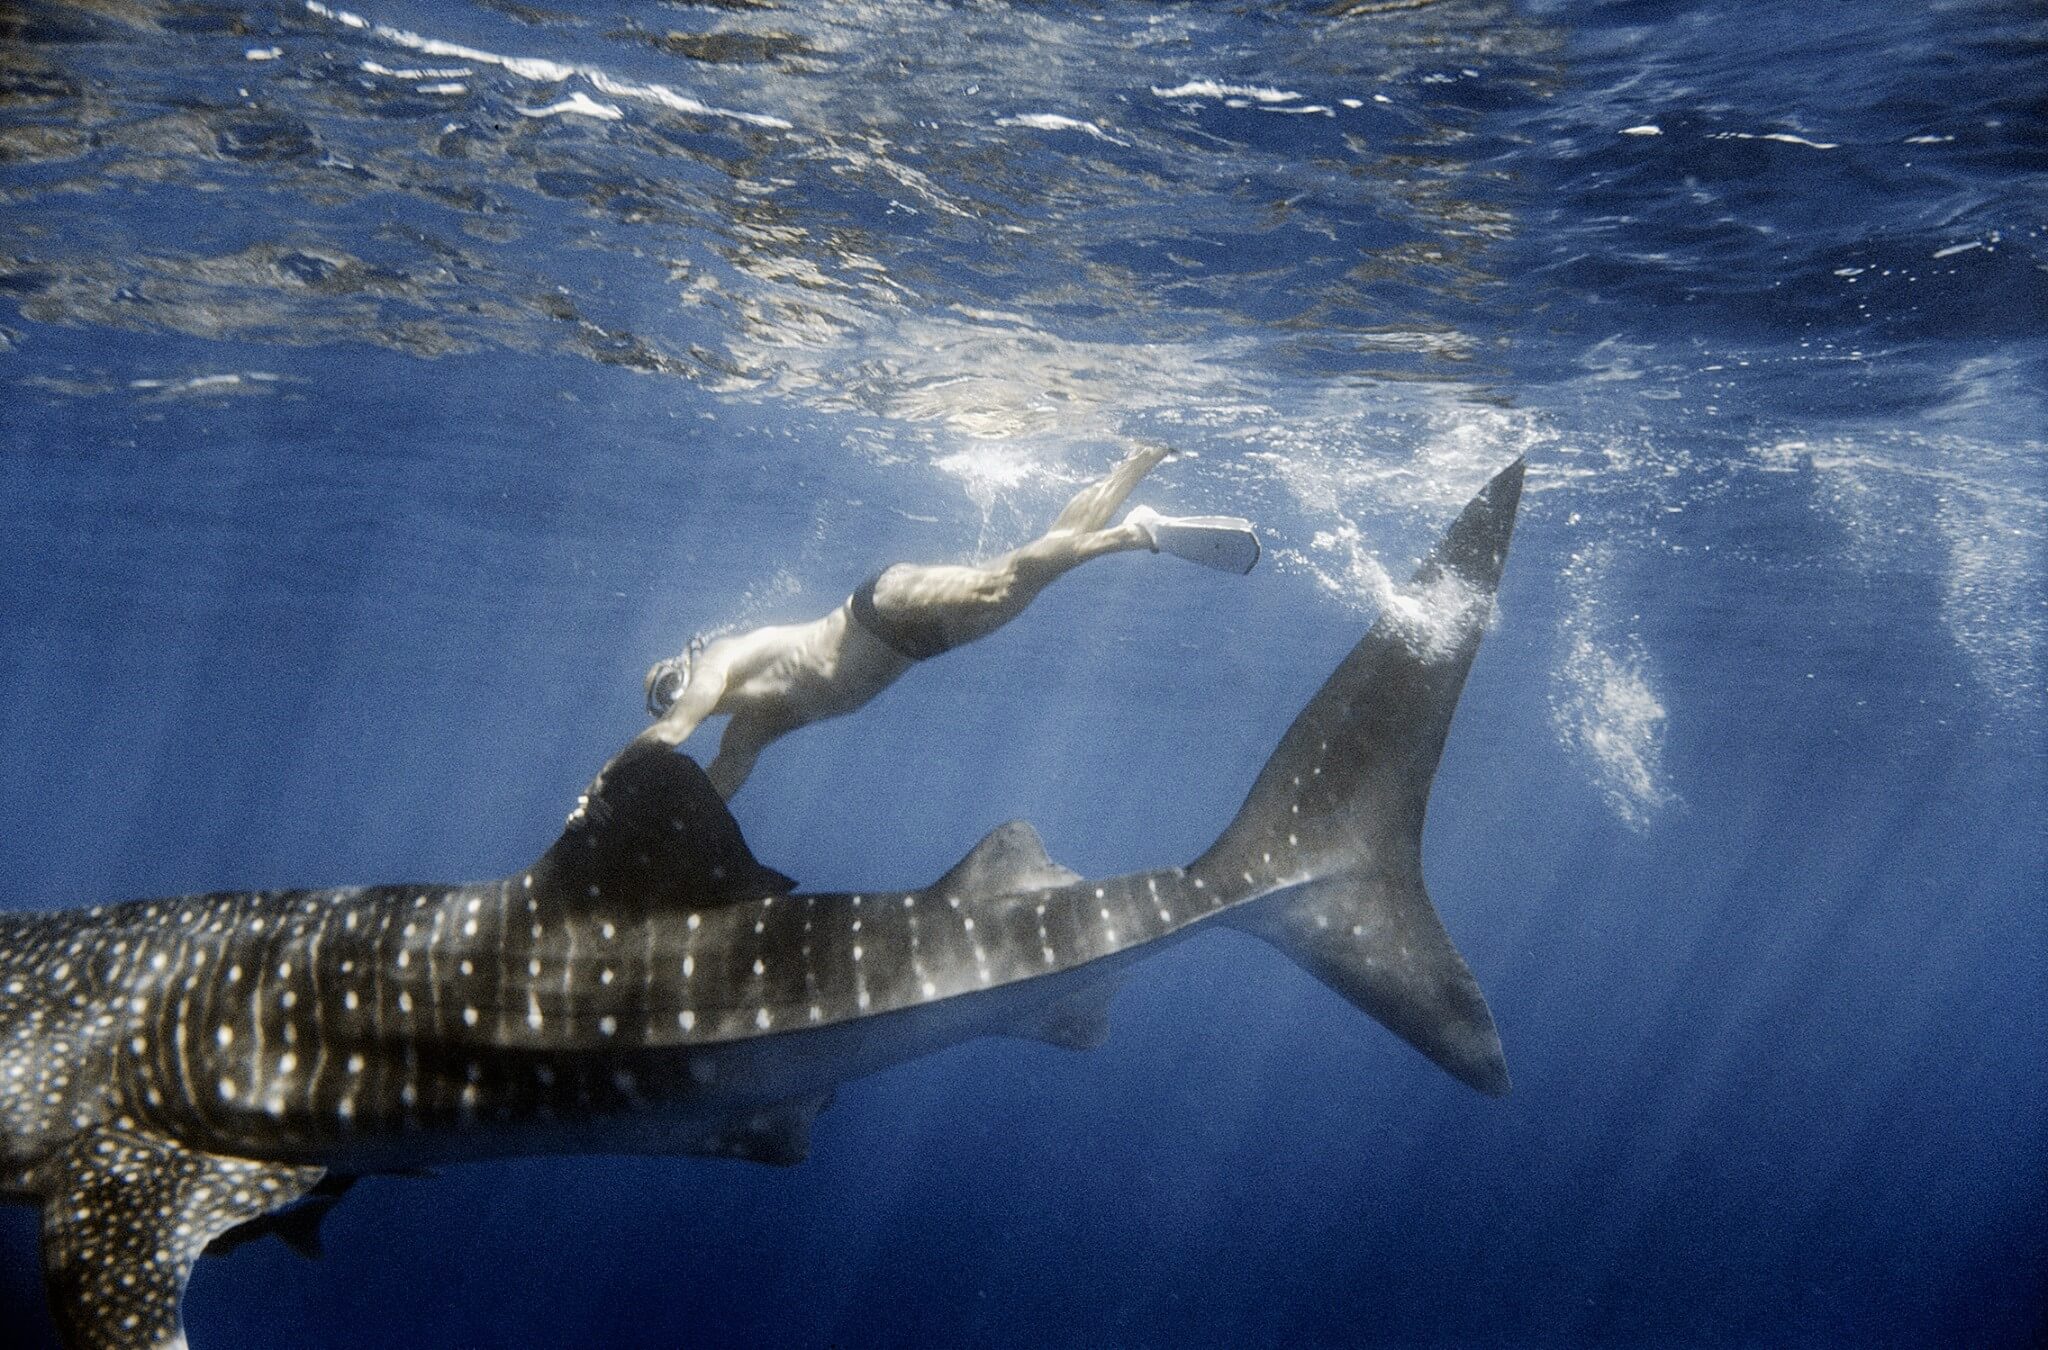 El tiburón ballena tiene cabeza ancha y plana y puede llegar a medir de 15 a 20 metros de largo y pesar más de 30 toneladas. Es efectivamente un tiburón, pero se le llama tiburón “ballena” por su tamaño.